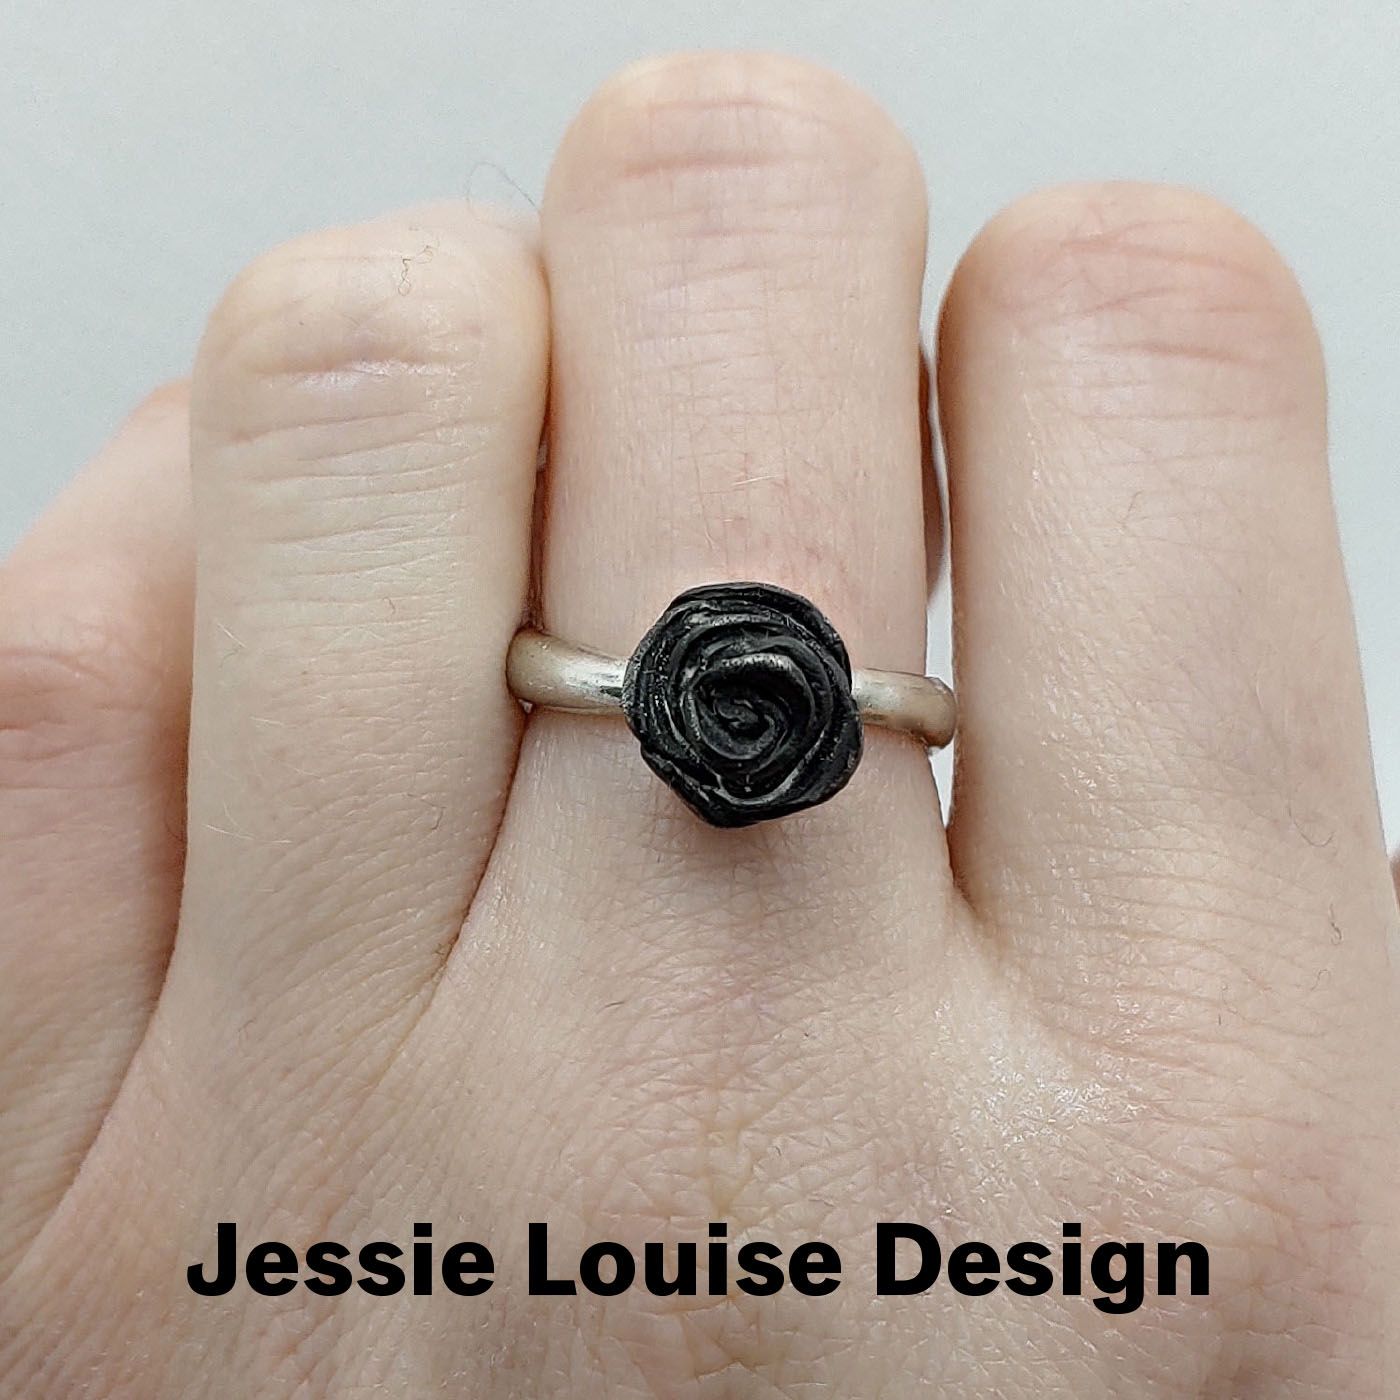 Jessie Louise Design